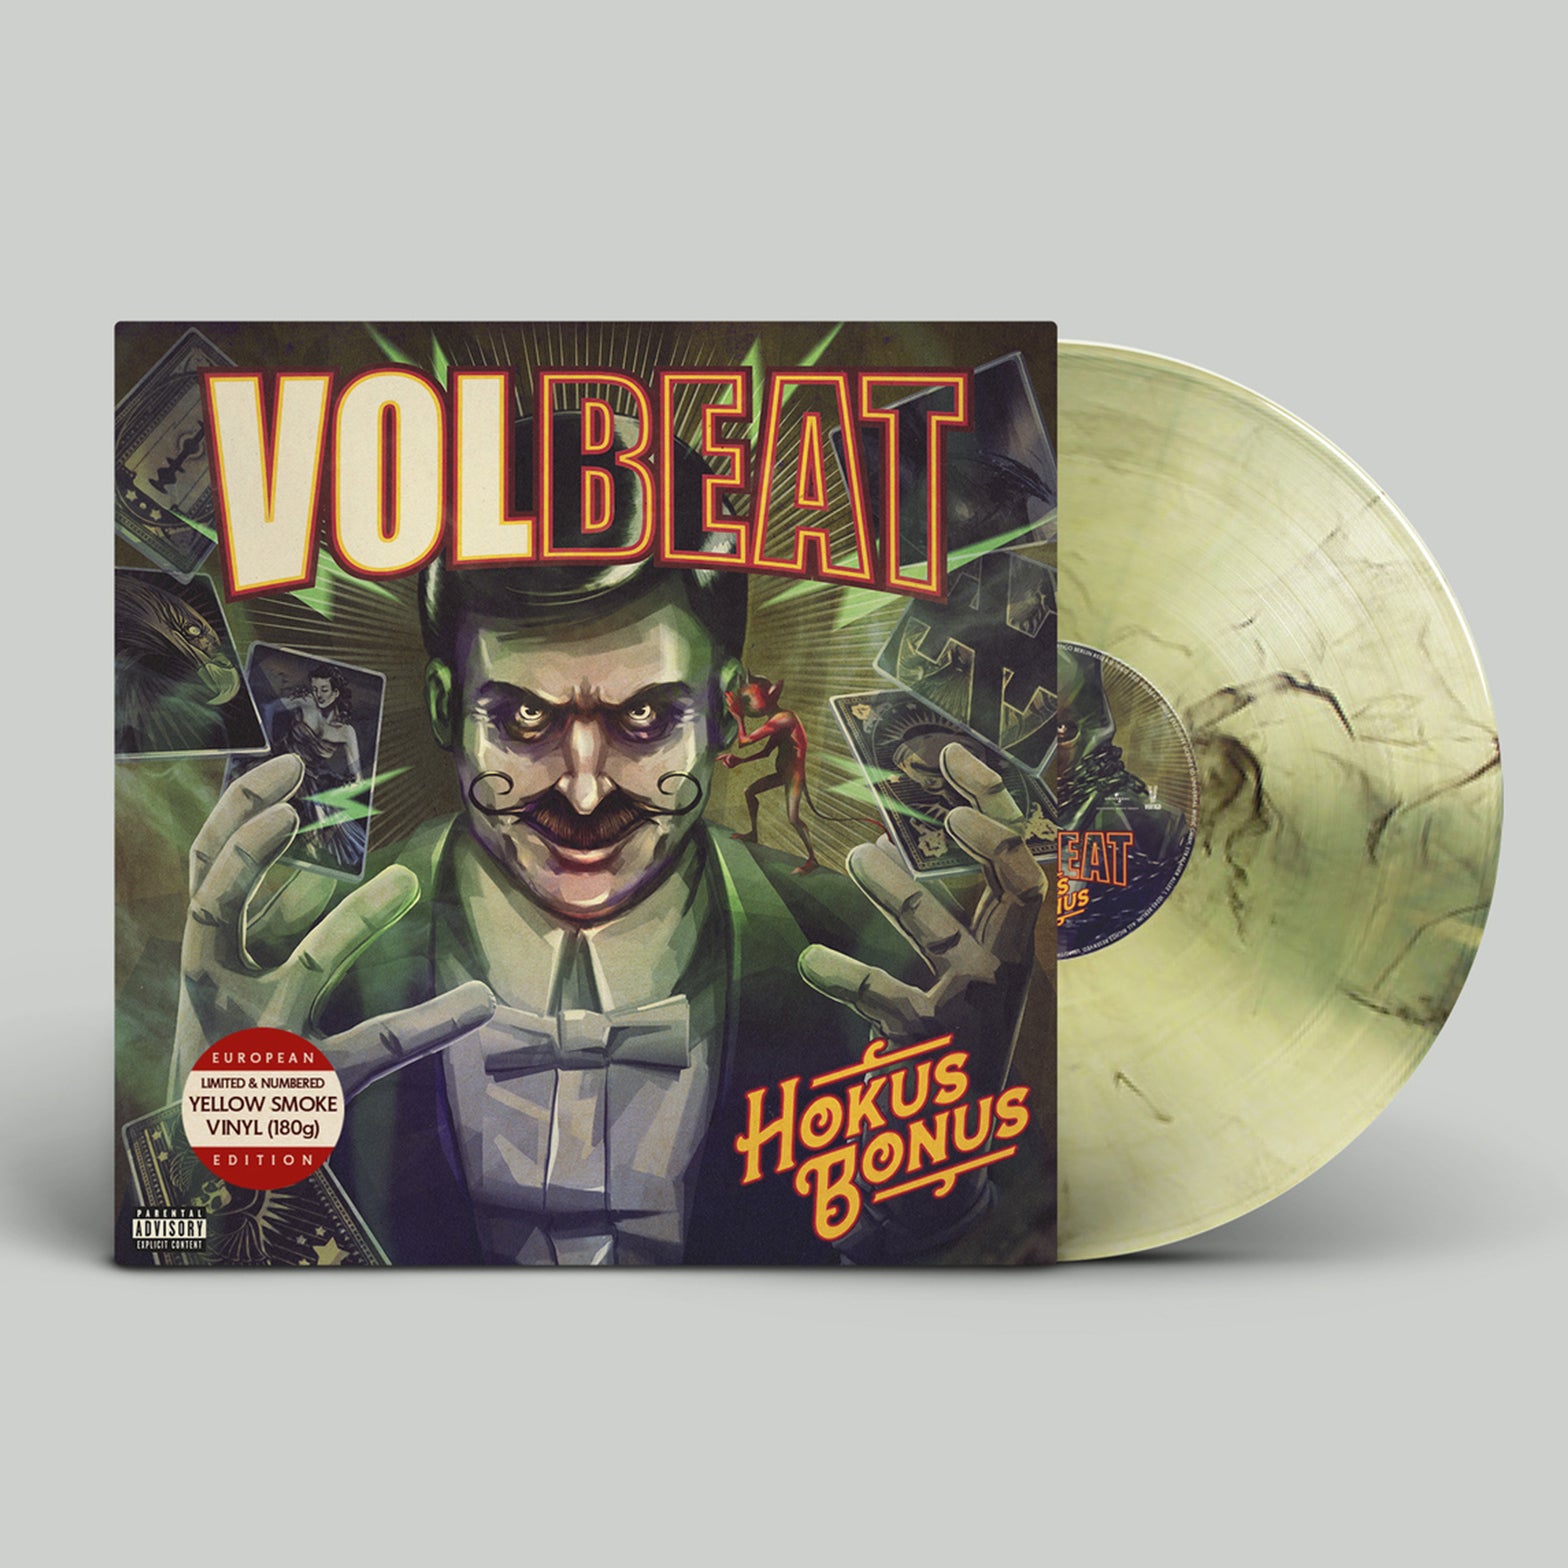 VOLBEAT - Hokus Bonus - LP - Yellow Smoke Vinyl